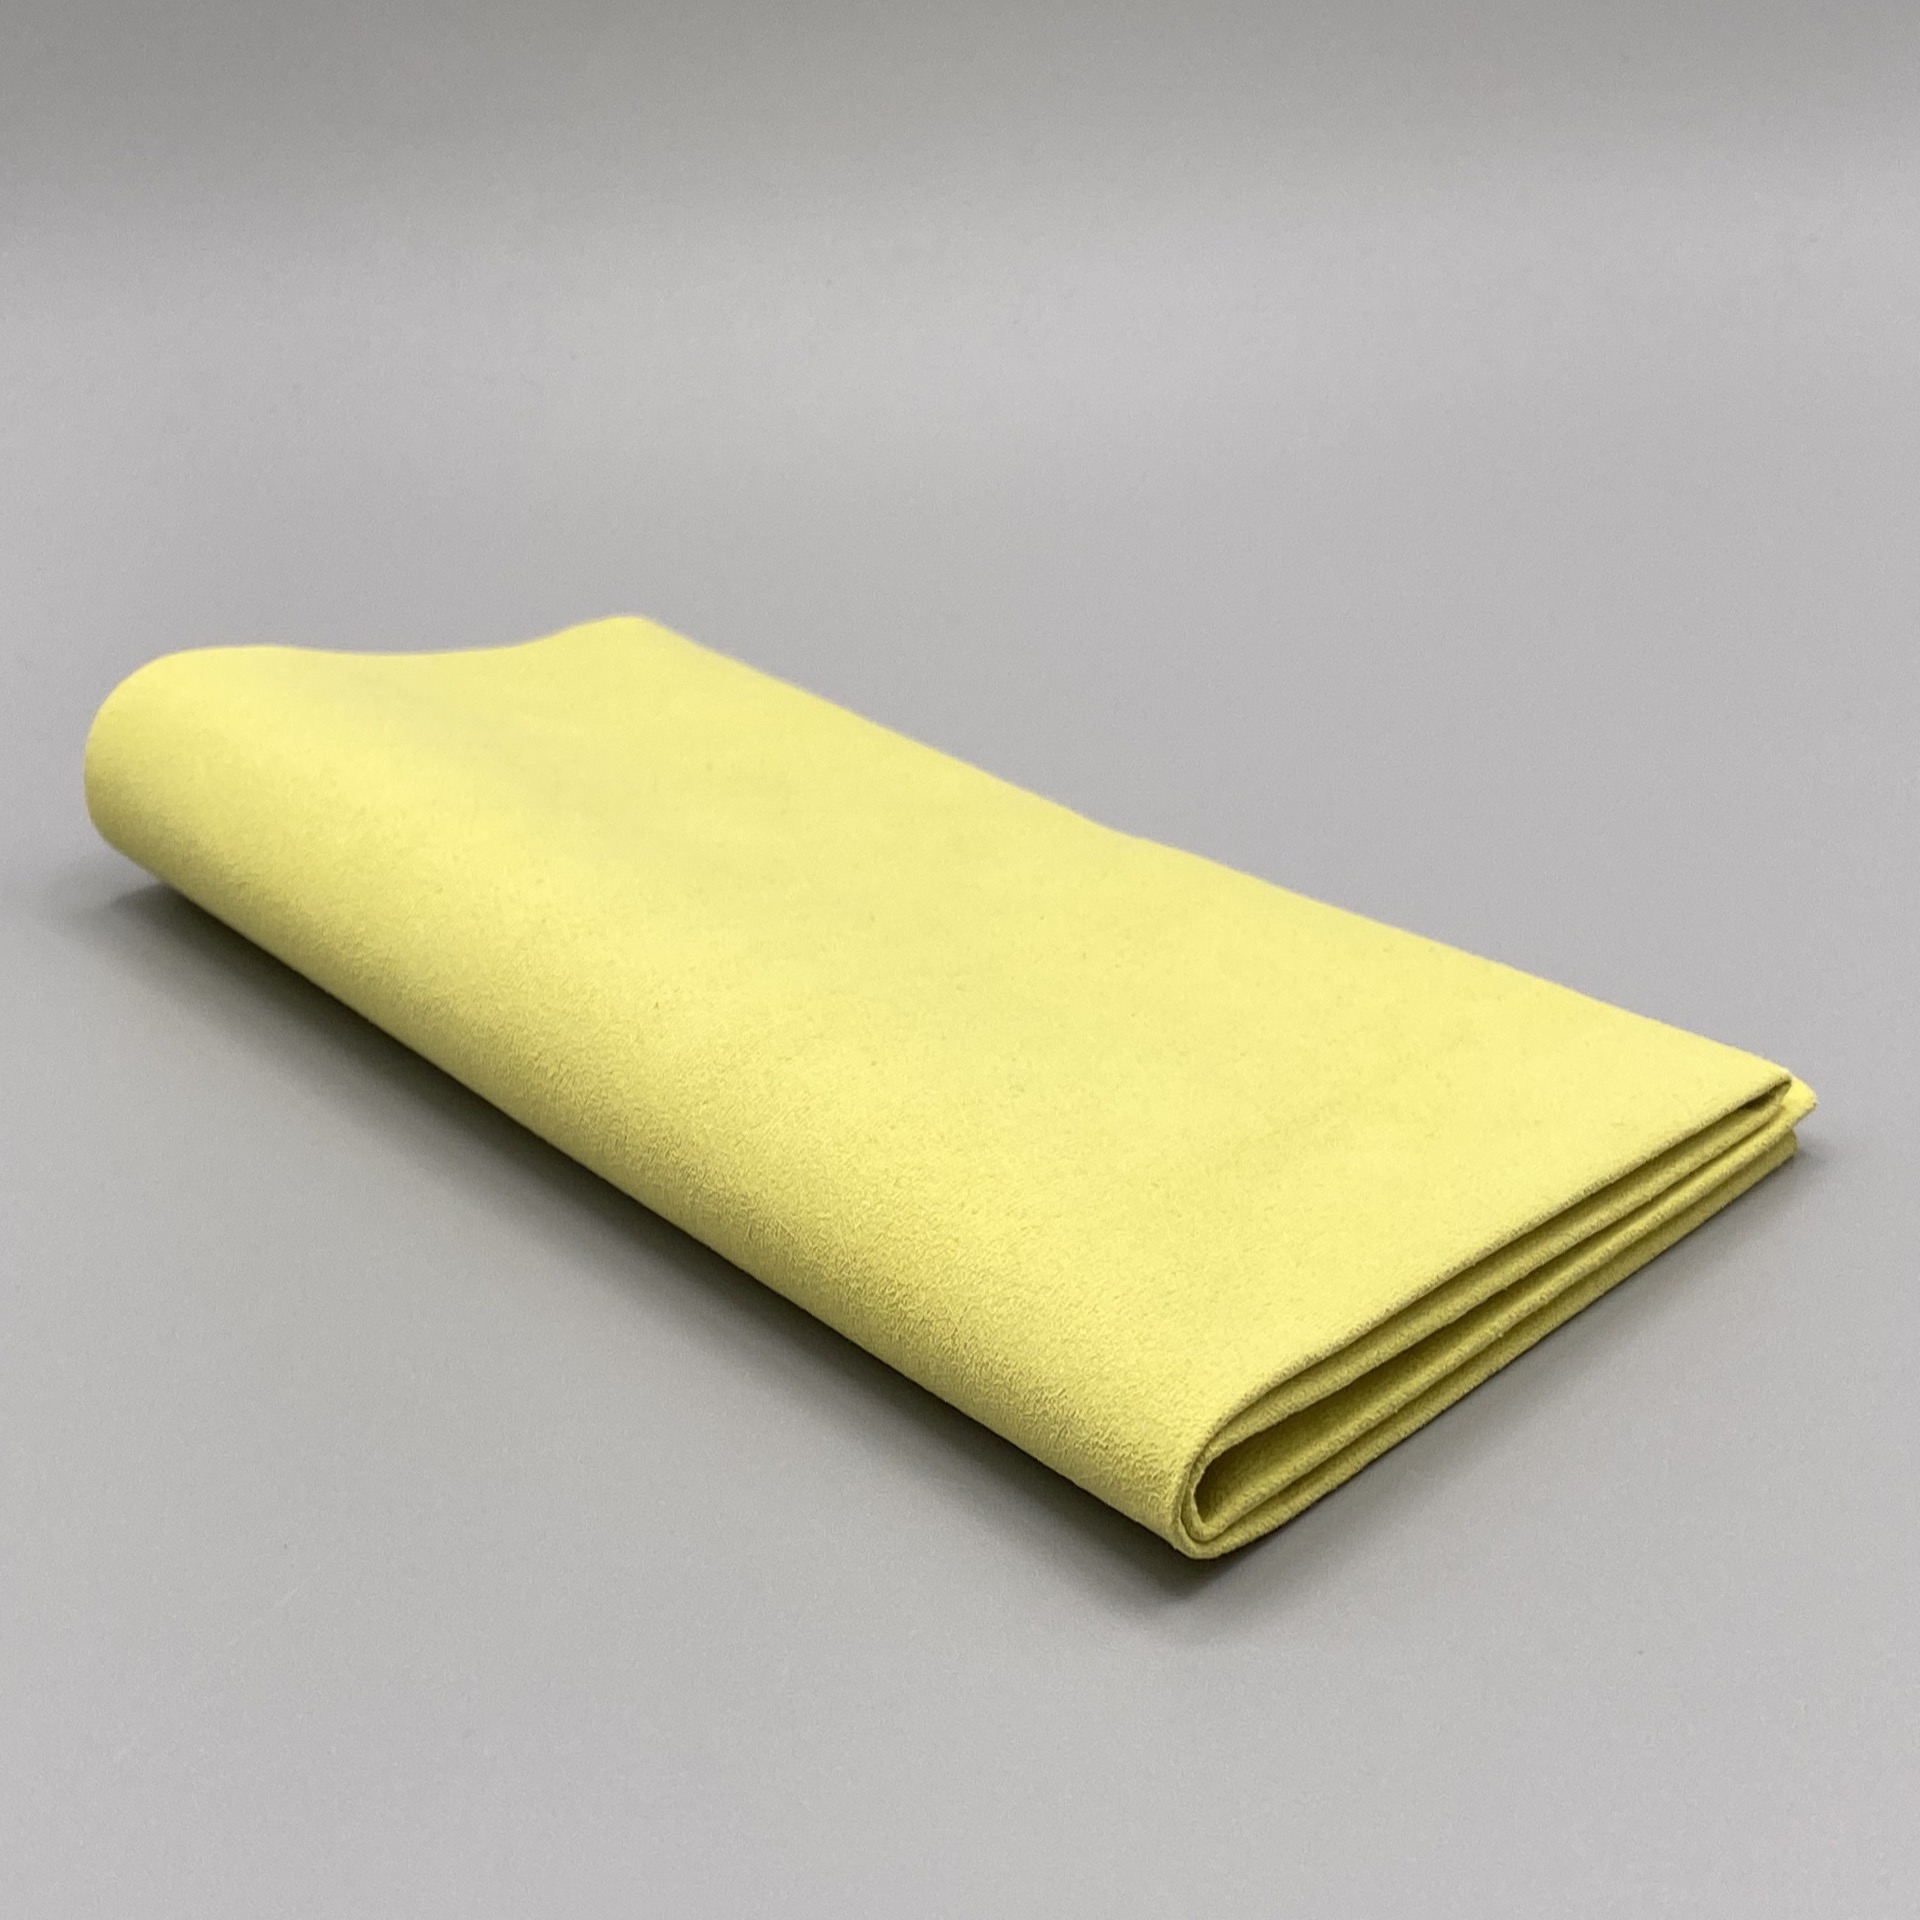 Ein zweifach gefaltetes, gelbes Microfasertuch in Premium-Qualität 